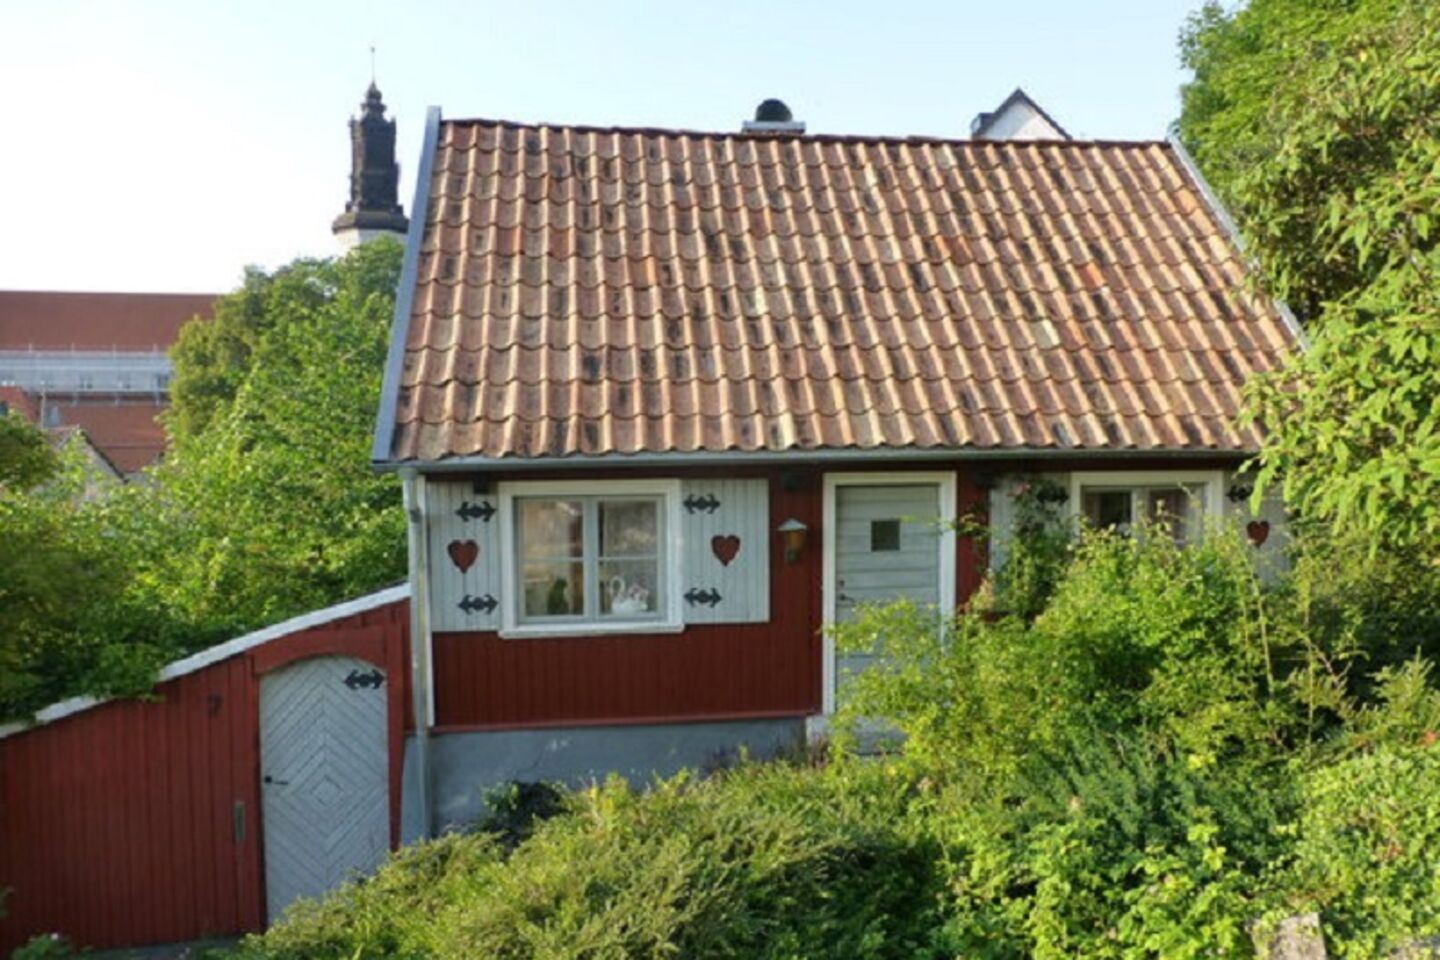 L'architecture scandinave des maisons en bois suédoises